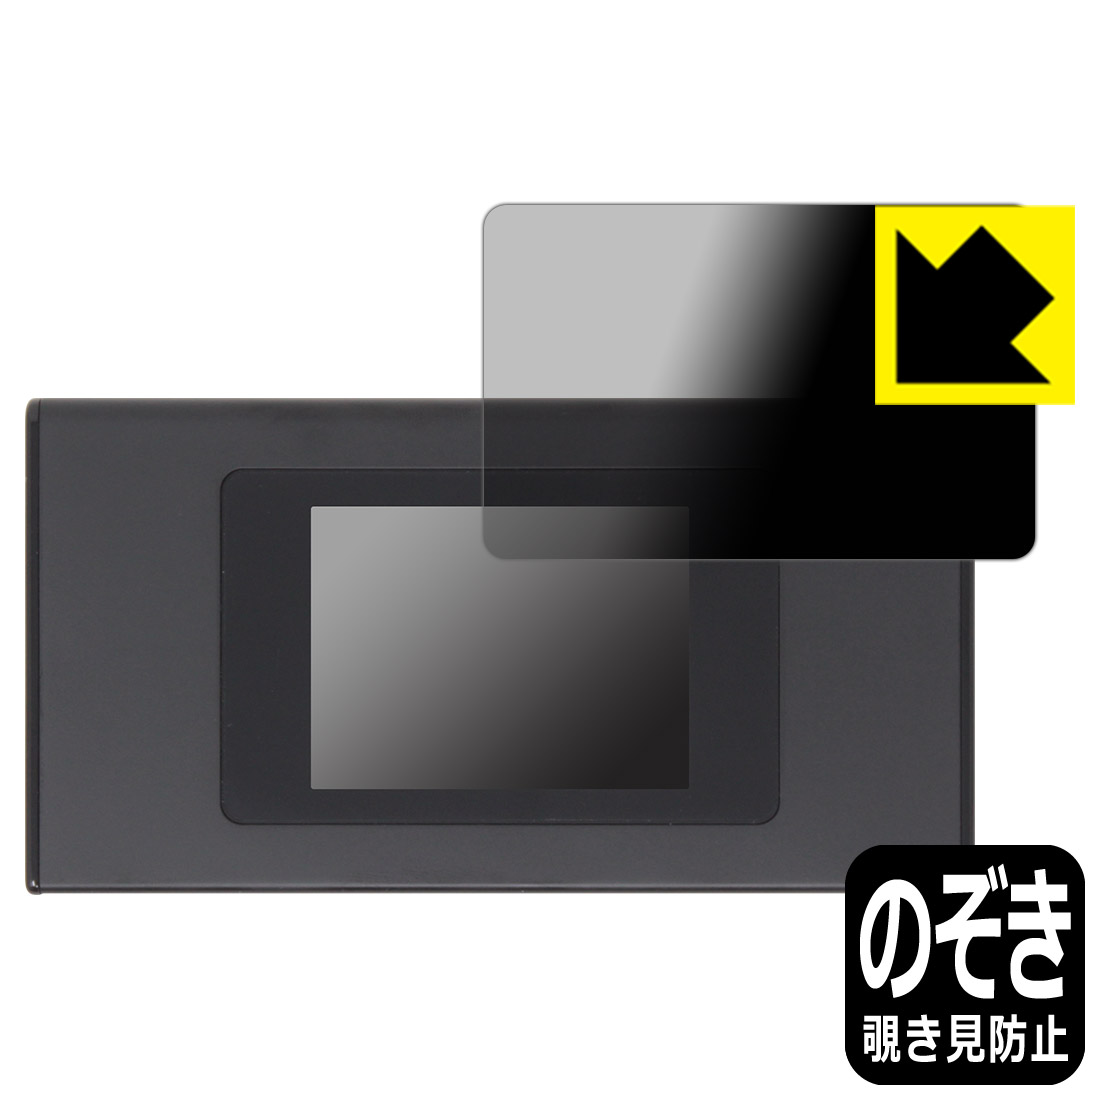 Privacy Shield【覗き見防止・反射低減】保護フィルム モバイルWi-Fiルーター MR1 (MS4GRA01) 画面用 日本製 自社製造直販